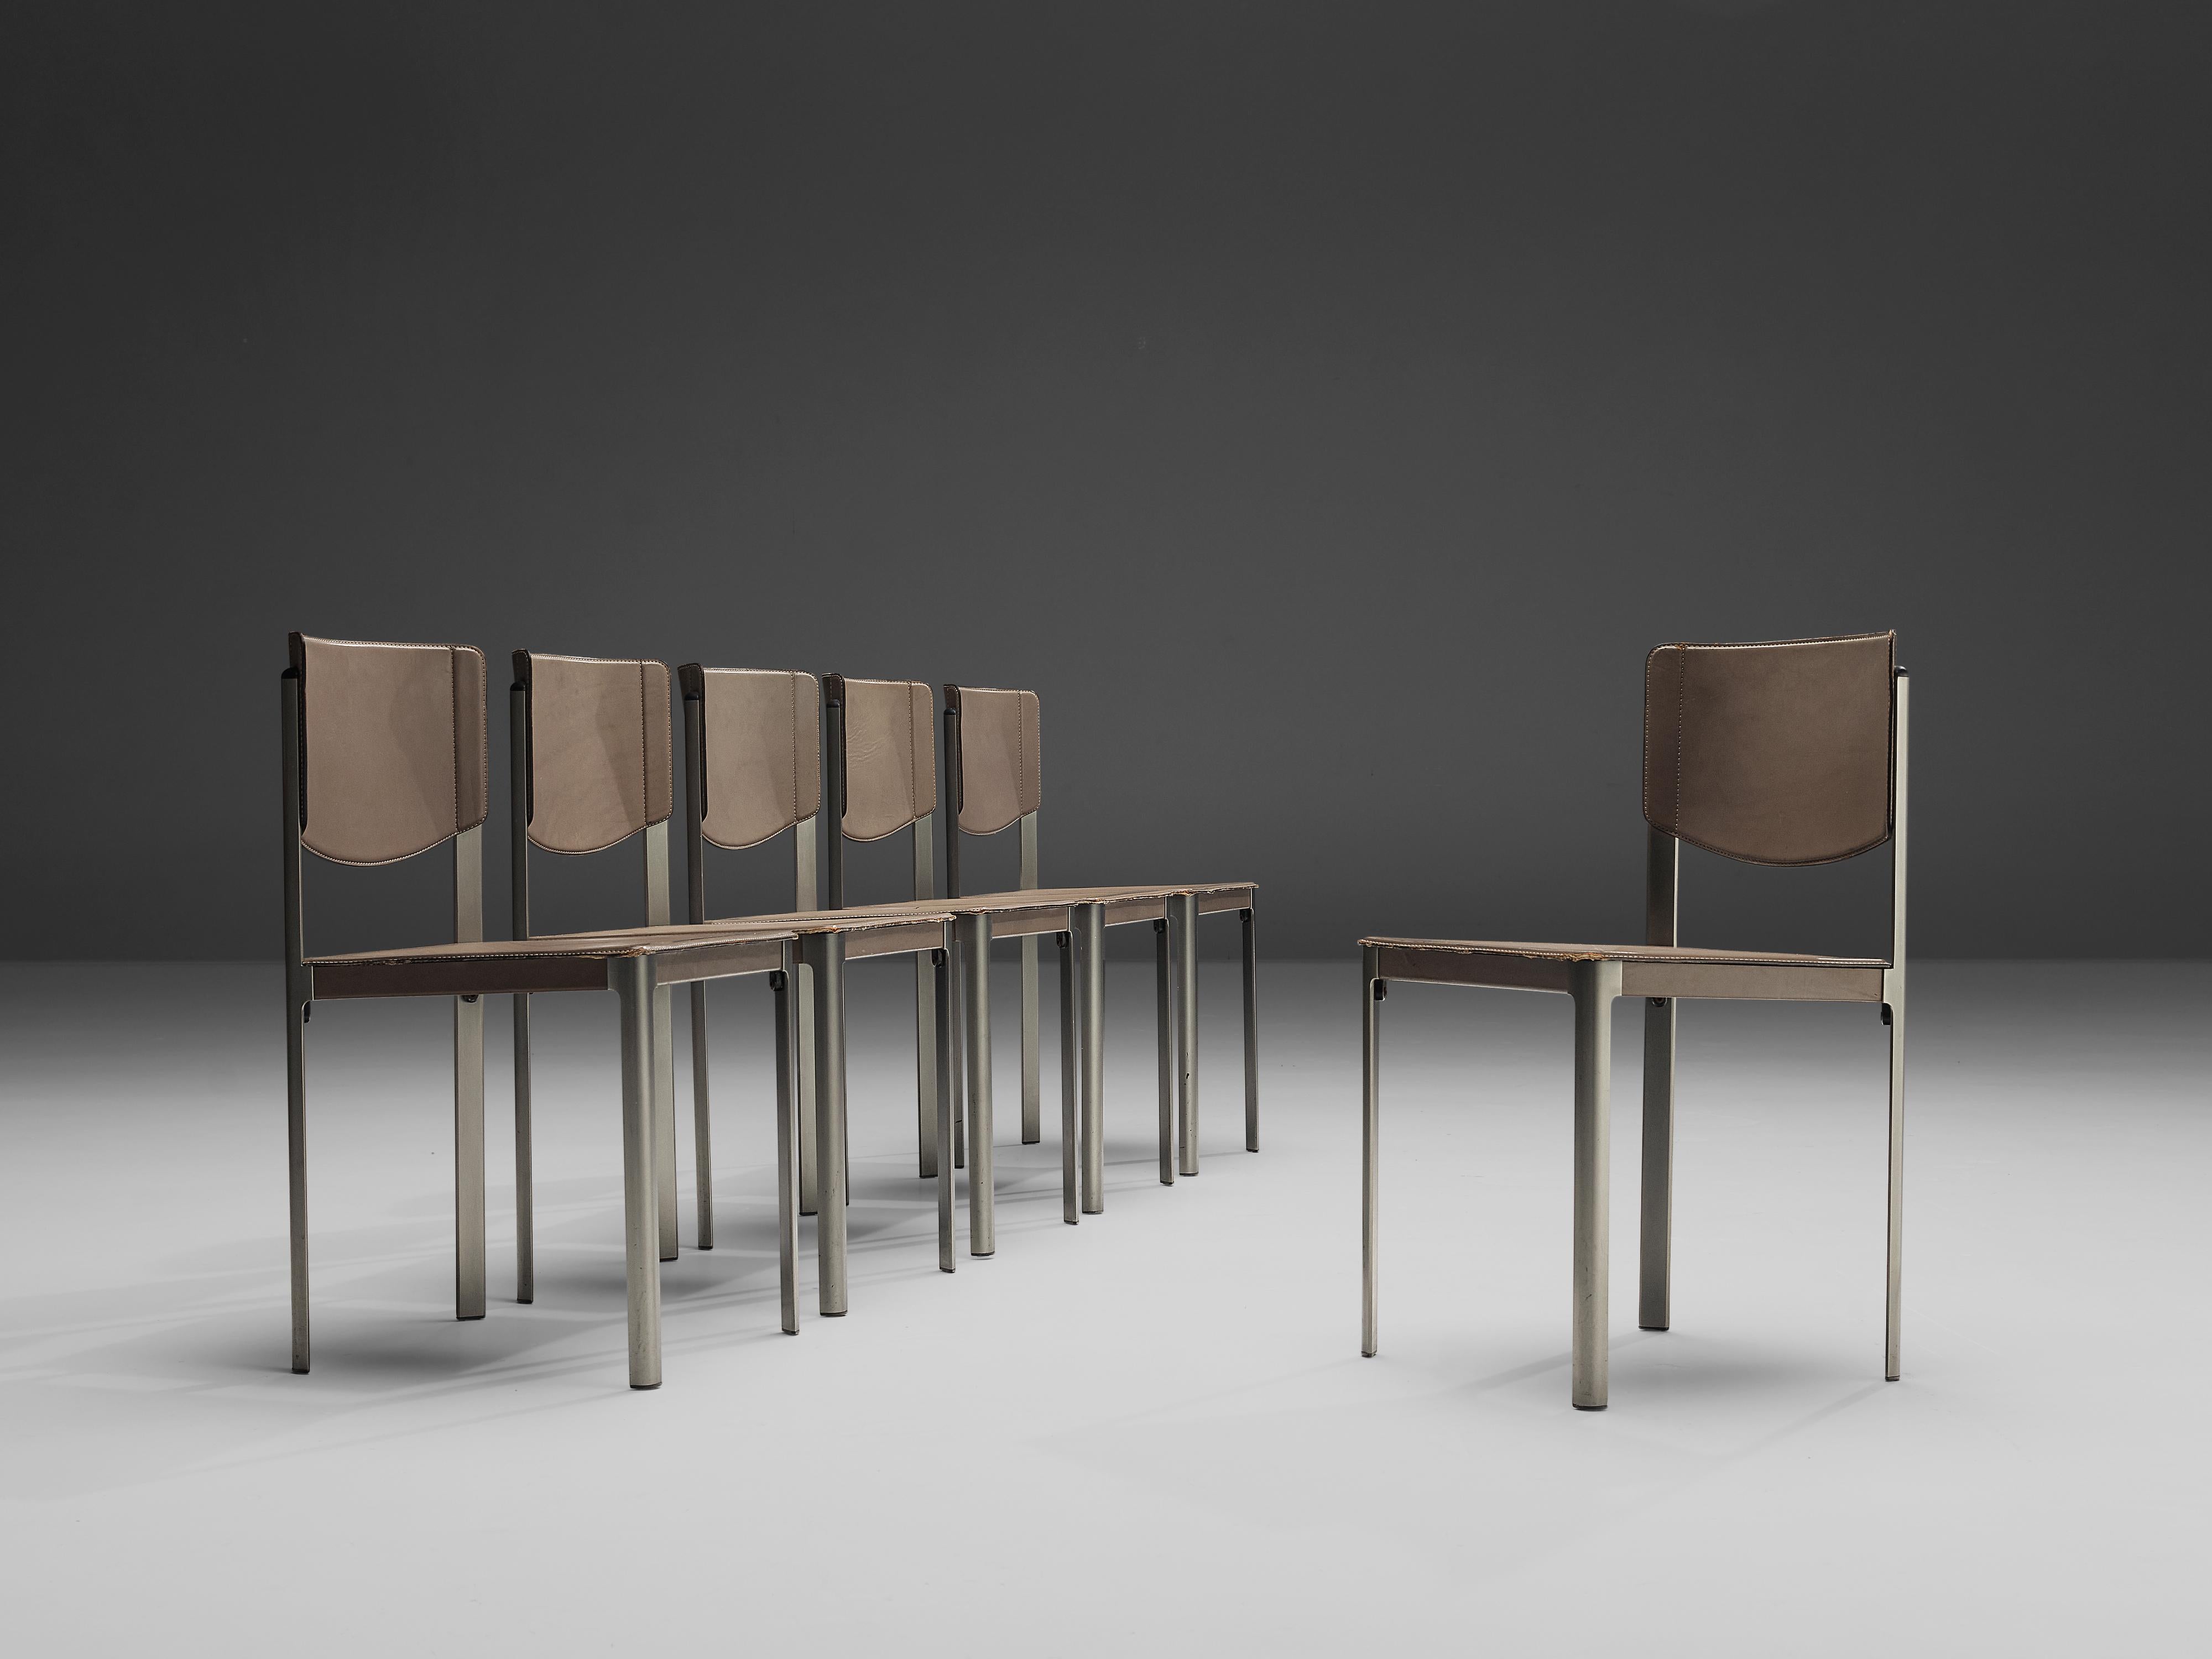 Matteo Grassi, Satz von sechs Esszimmerstühlen, Leder und Stahl, Italien, 1980er Jahre.

Diese raffinierten grauen Lederstühle von Matteo Grassi zeichnen sich durch ein kantiges Design aus. Der Sitz und das Gestell sind mit Leder gepolstert, das